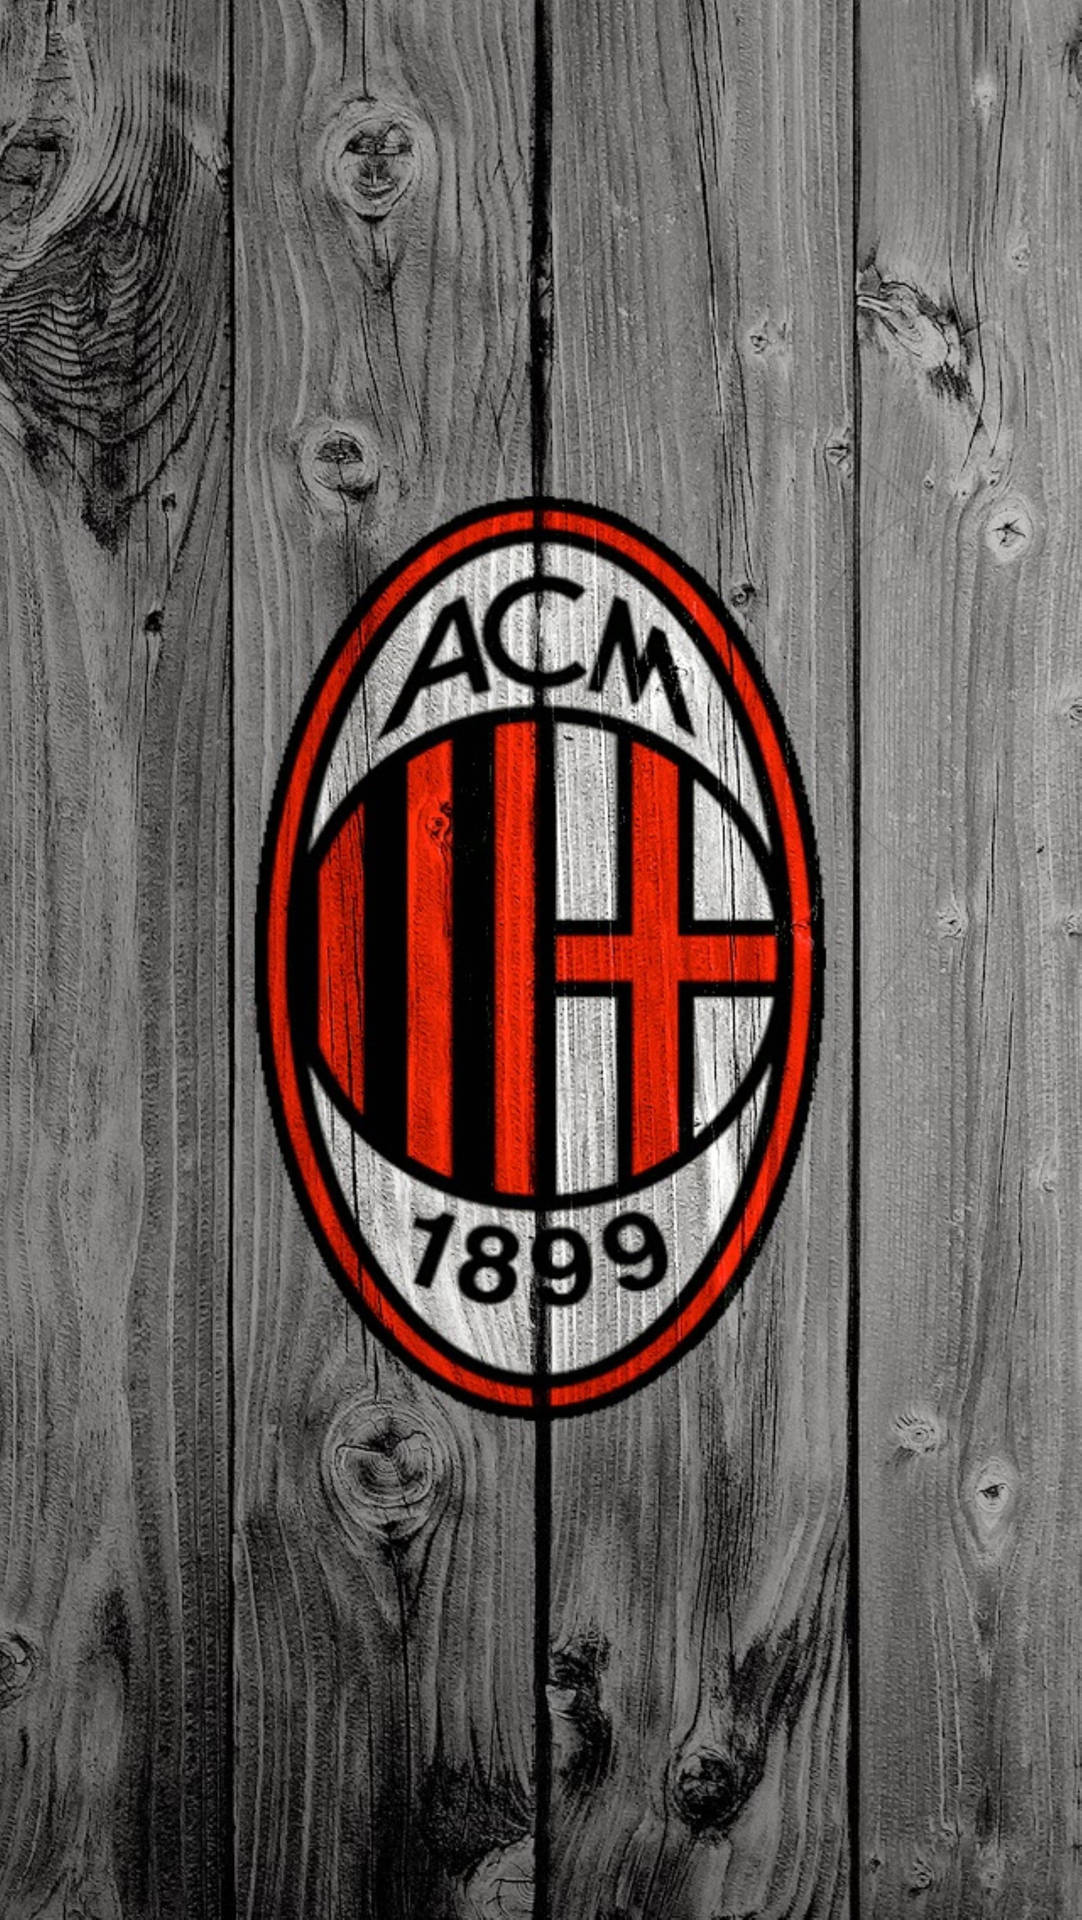 Wooden Ac Milan